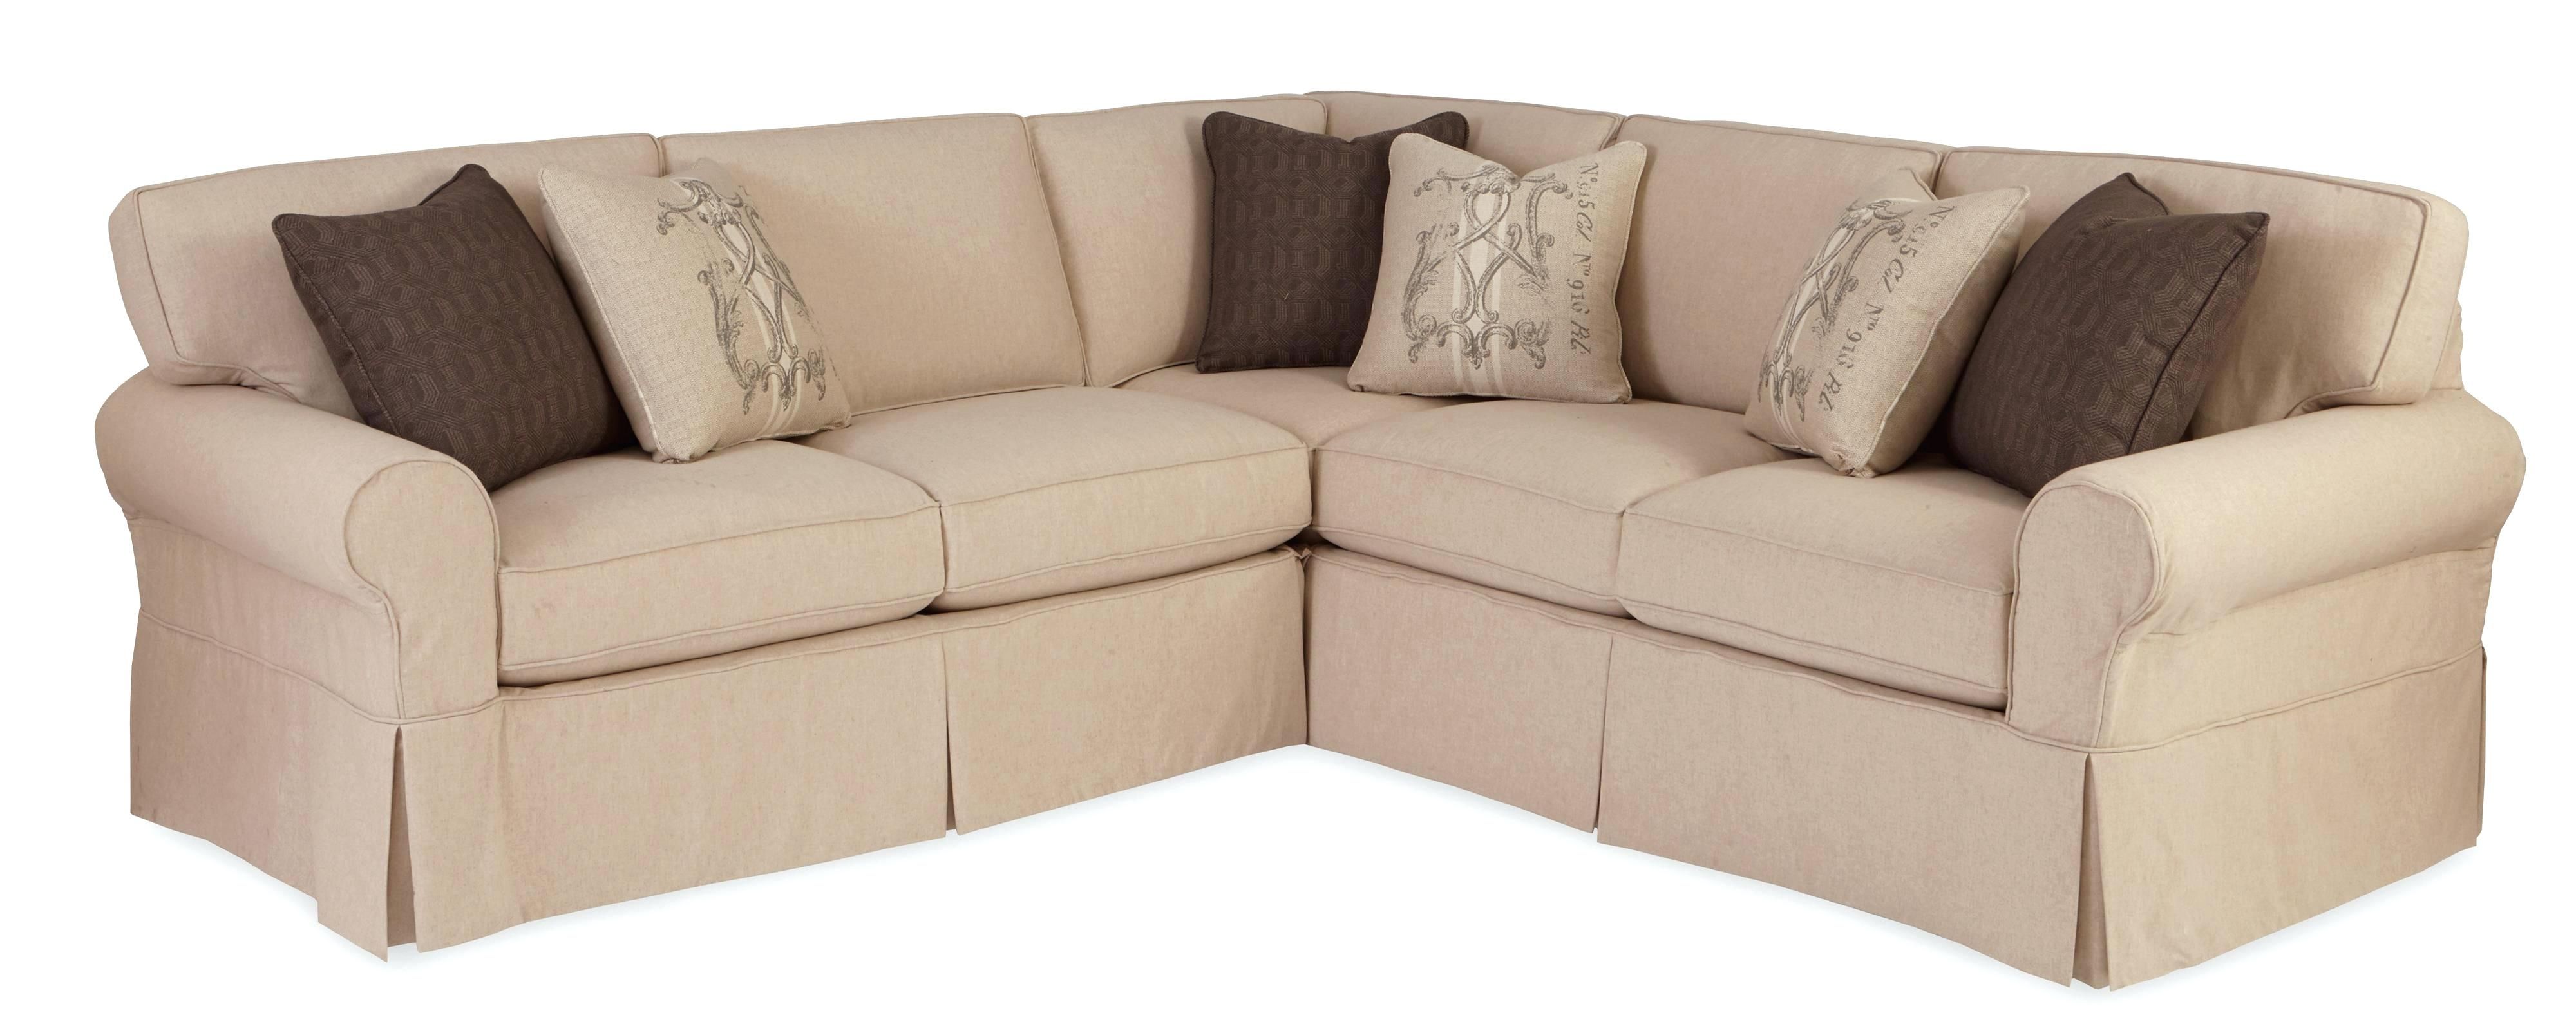 Fresh Target Sectional Sofa (34 Photos) | Clubanfi With Target Sectional Sofas (View 10 of 10)